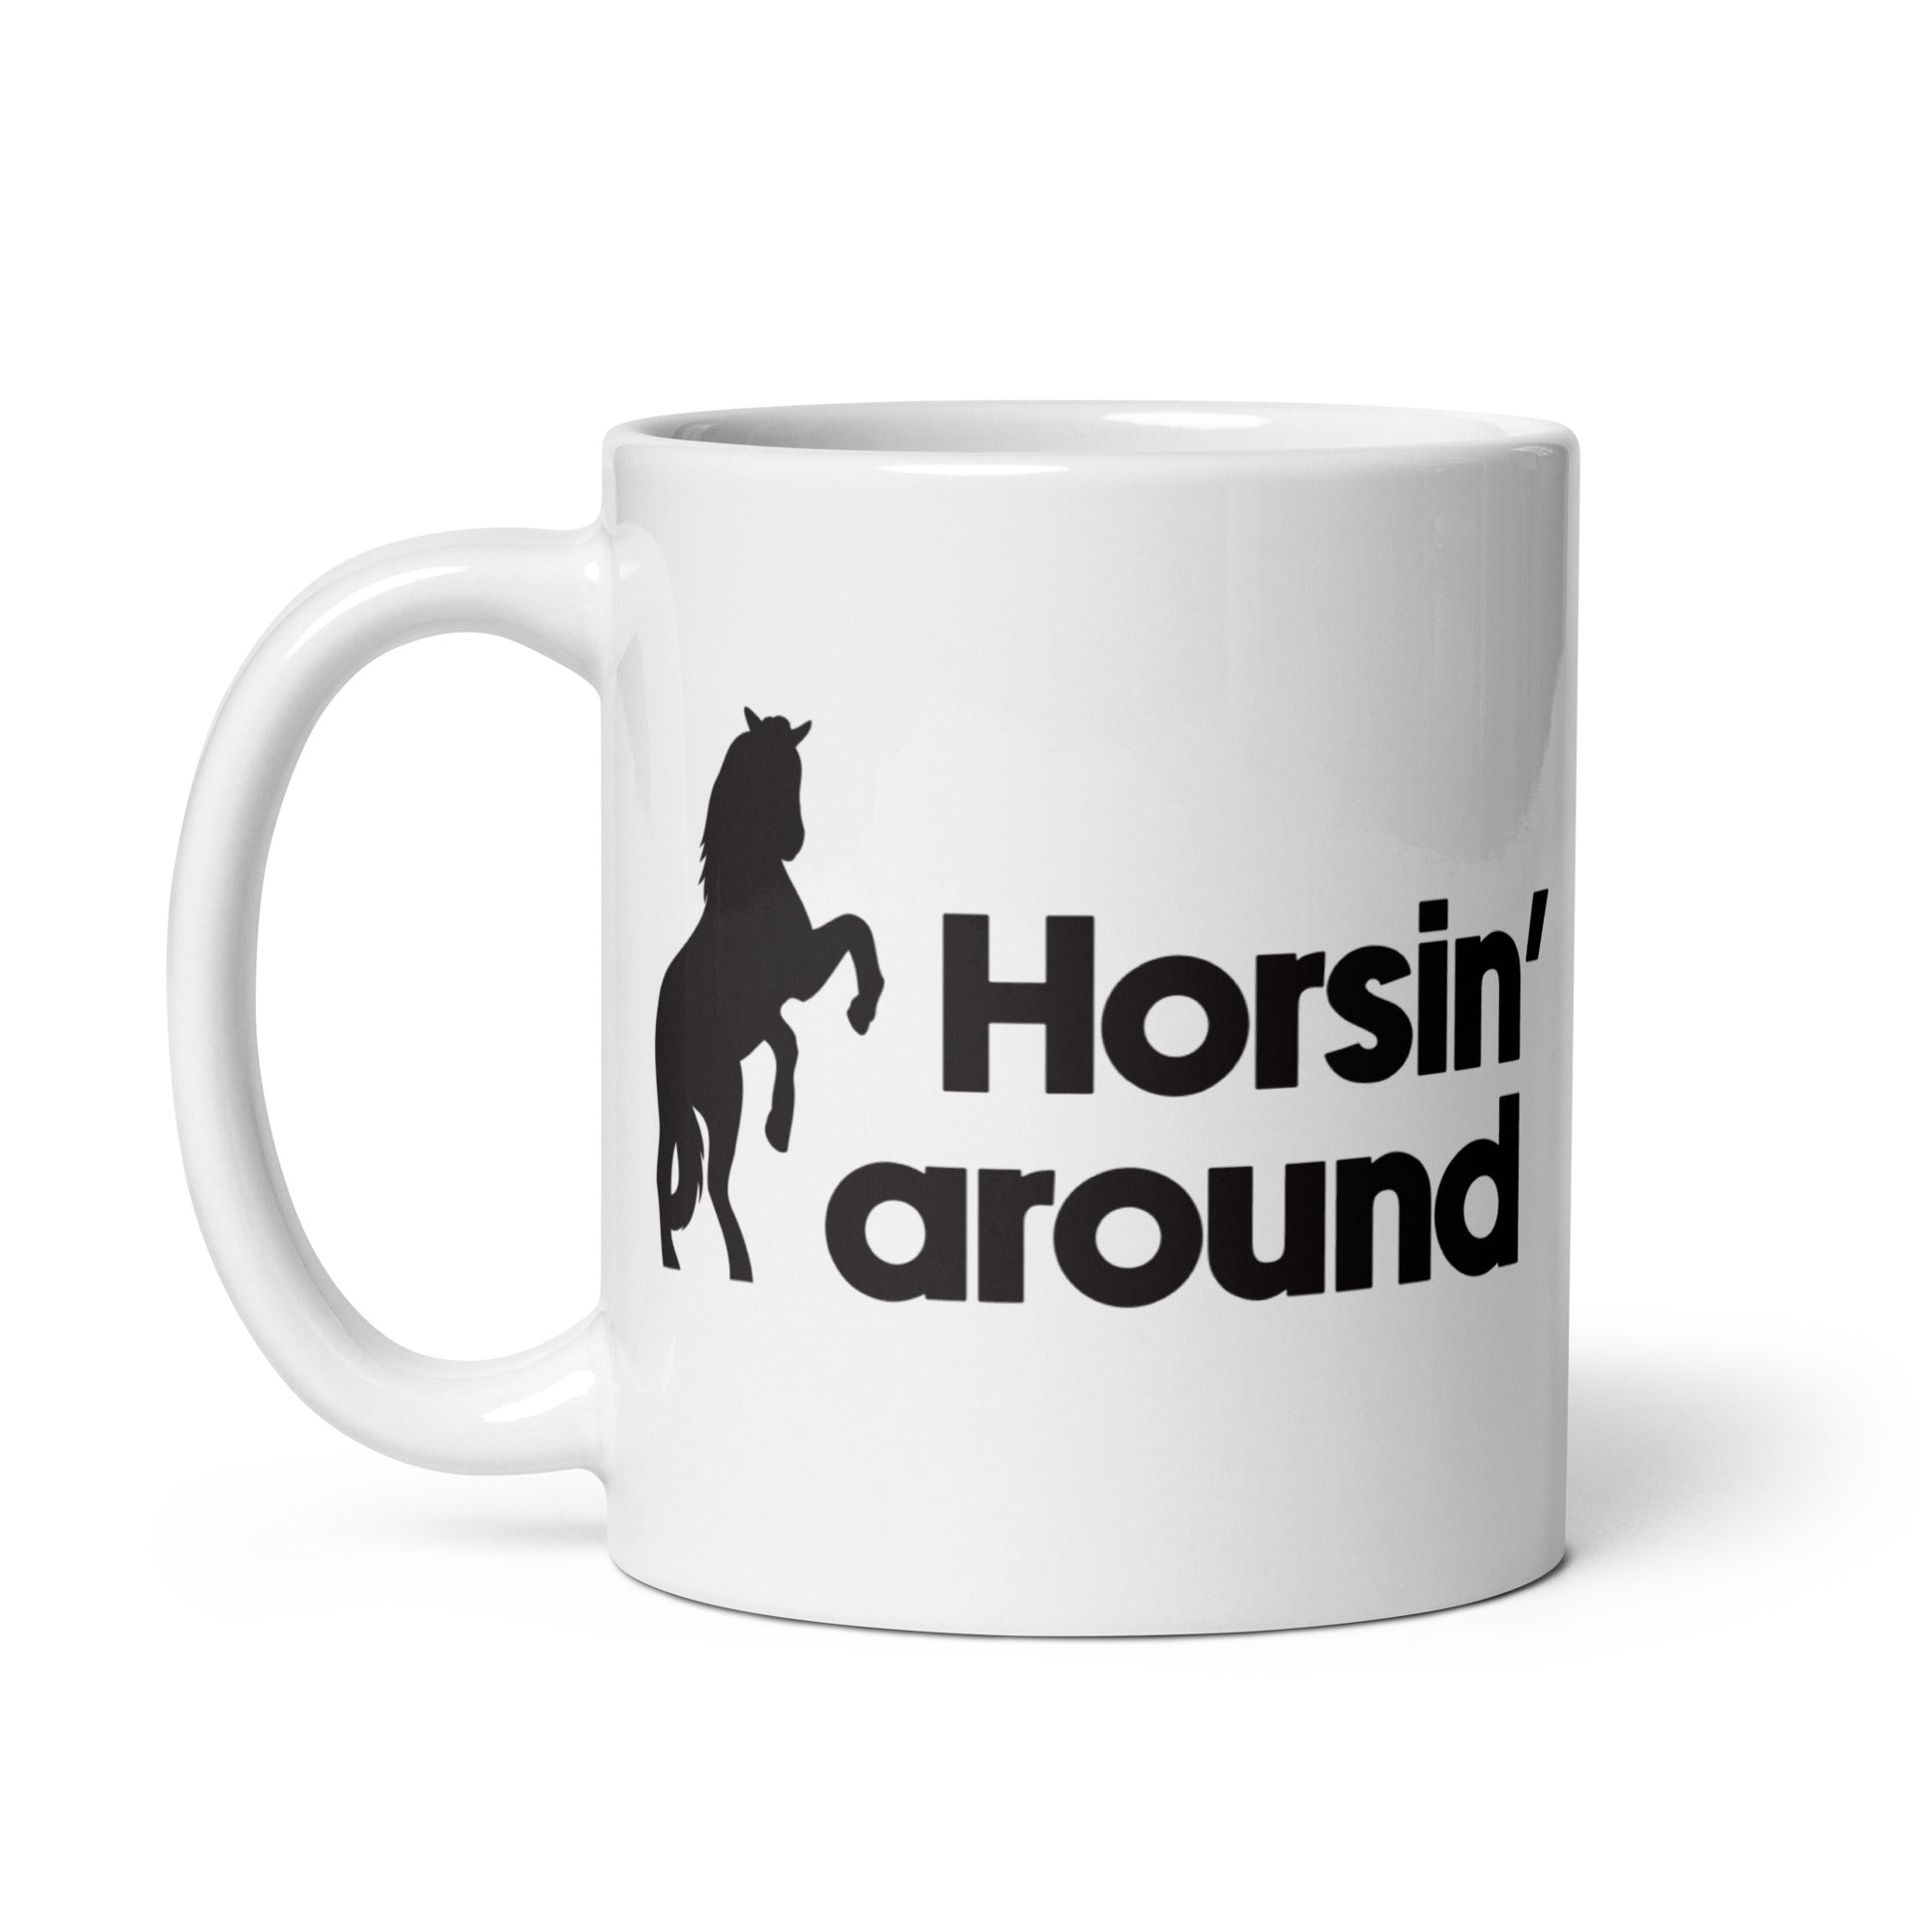 Horsin' around White Mug